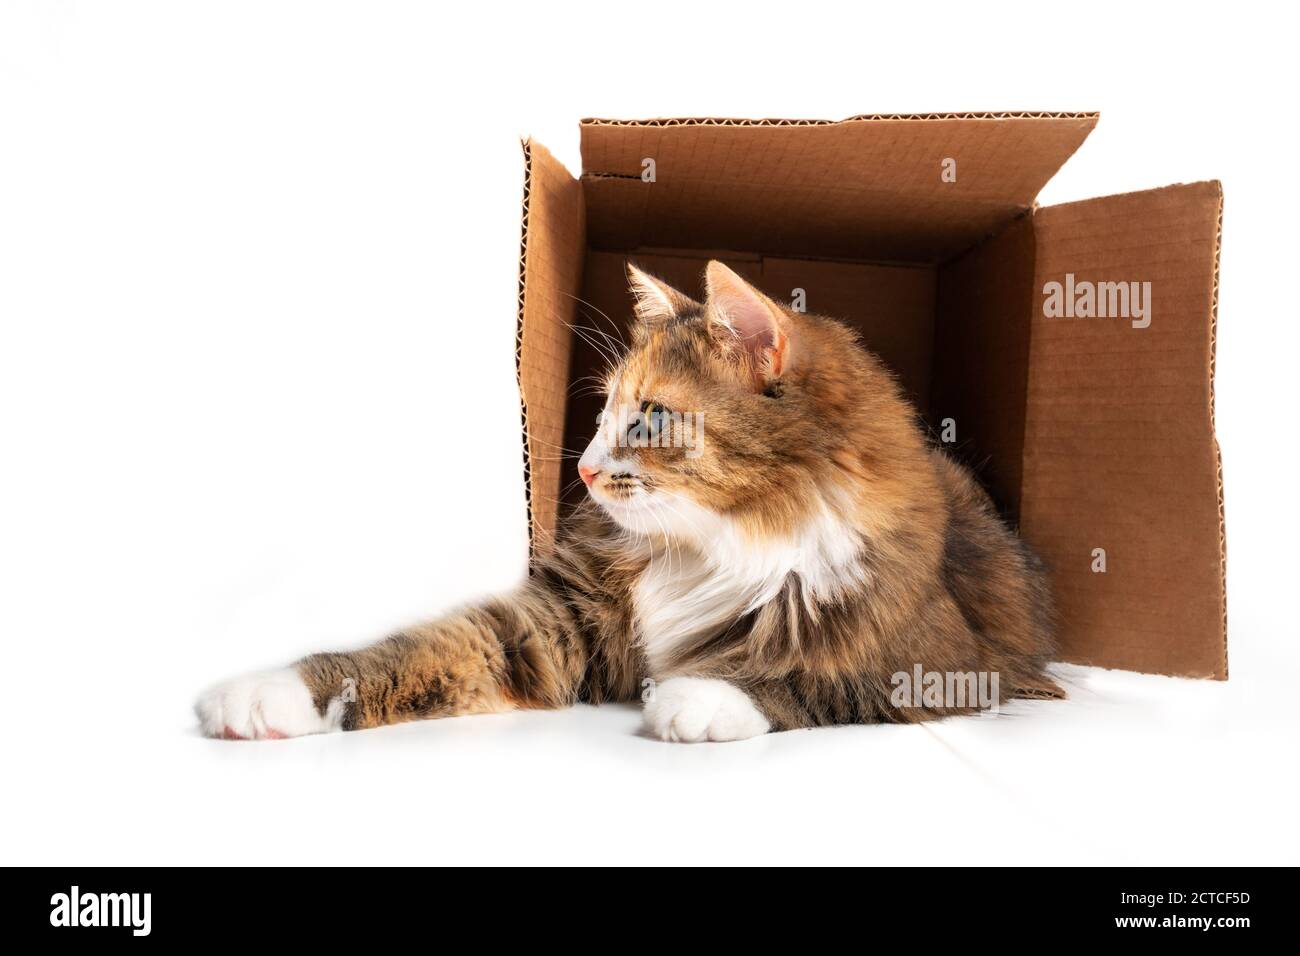 Katze im Karton. Die verspielte Katze liegt mit ausgestreckten Pfoten in der Box. 1 Jahr alte weibliche lange Haare calico oder torbie Katze. Konzept für Stockfoto